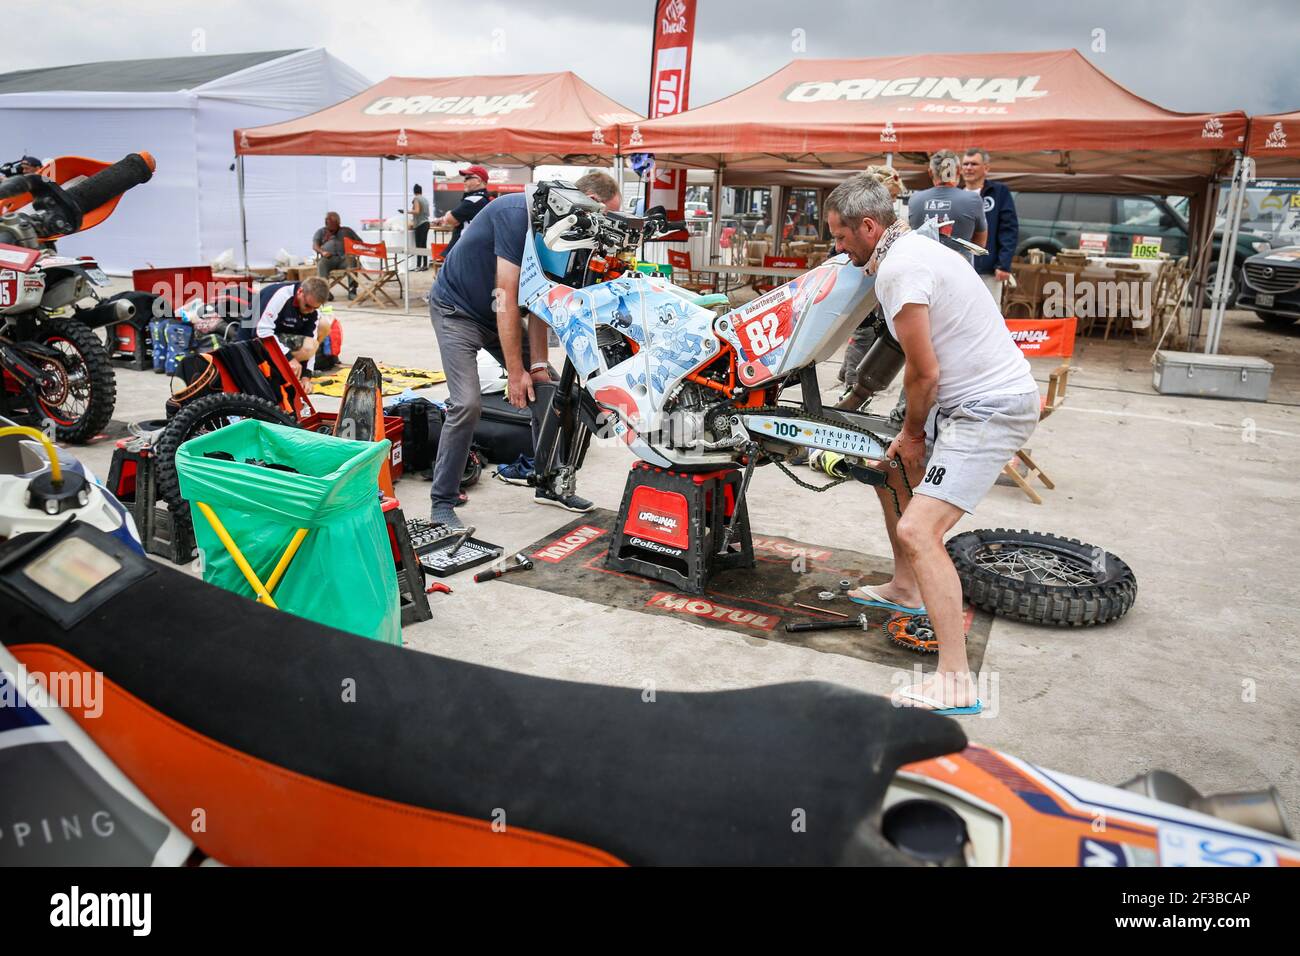 82 BARDAUSKAS Balys (LIT), KTM, Lietuvele, Motul, Moto, Azione durante la Dakar 2019, giorno di riposo Arequipa, perù, il 12 gennaio - Foto Antonin Vincent / DPPI Foto Stock